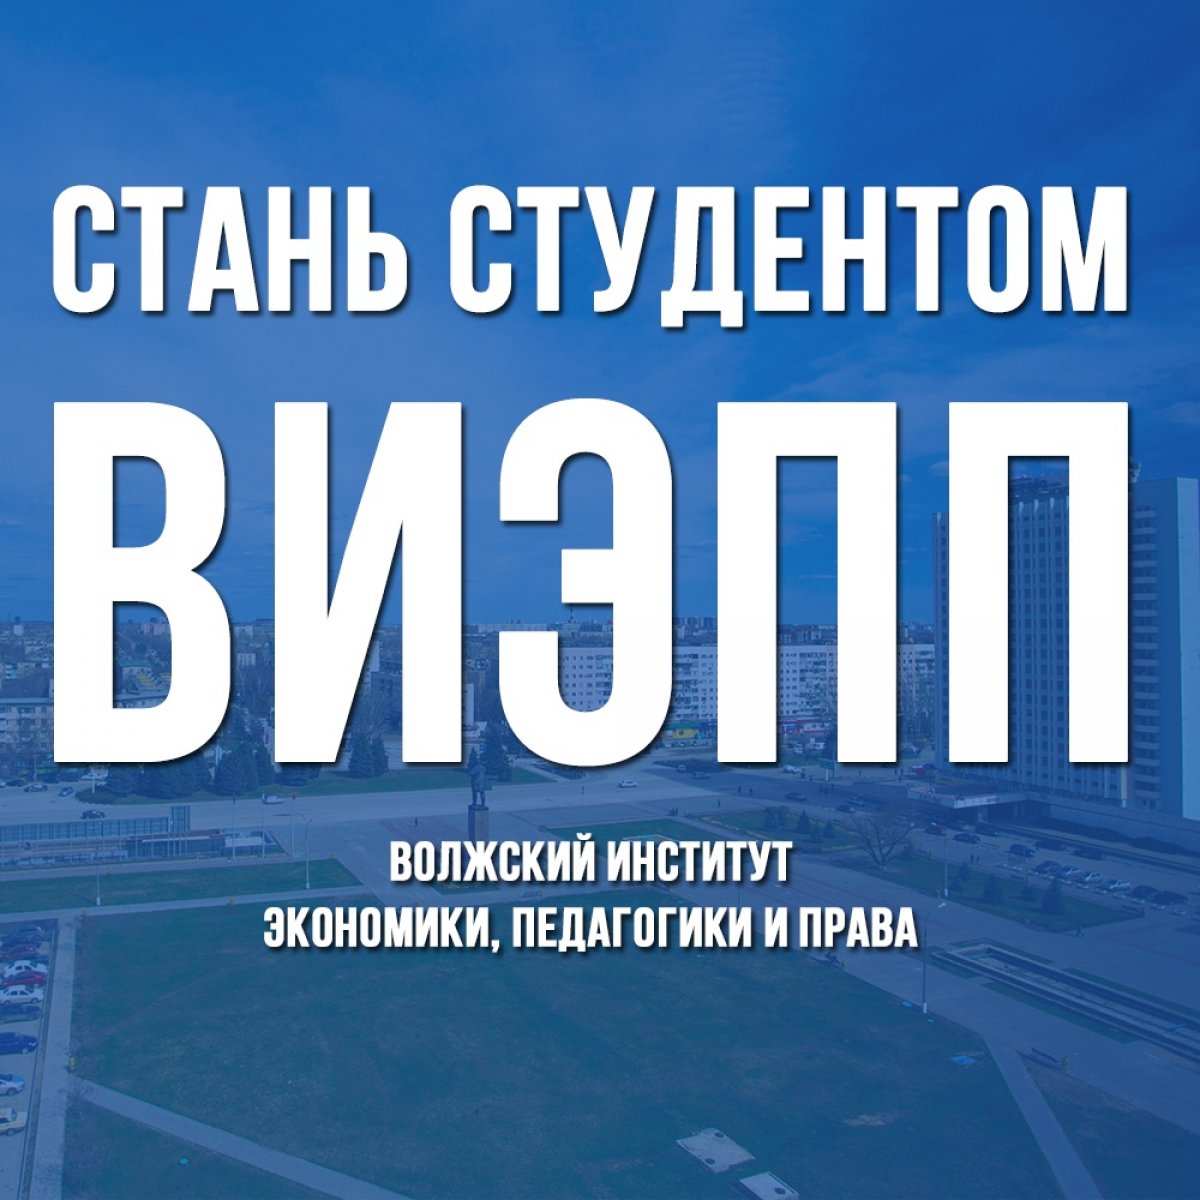 ВИЭПП является самым крупным муниципальным вузом в России